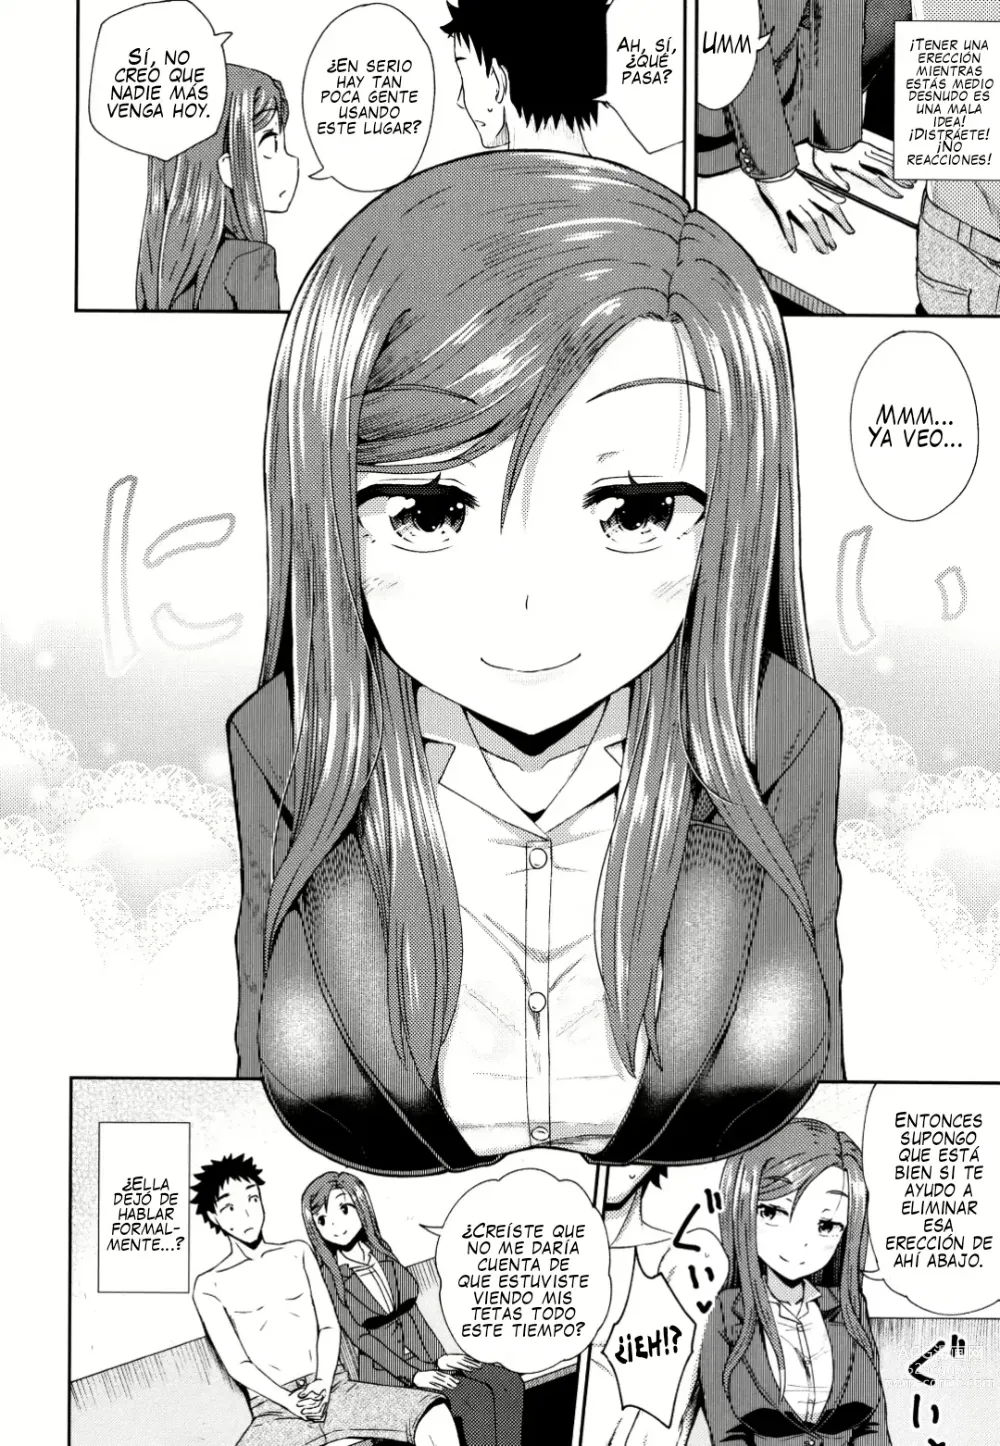 Page 4 of manga Fellati-o-mat